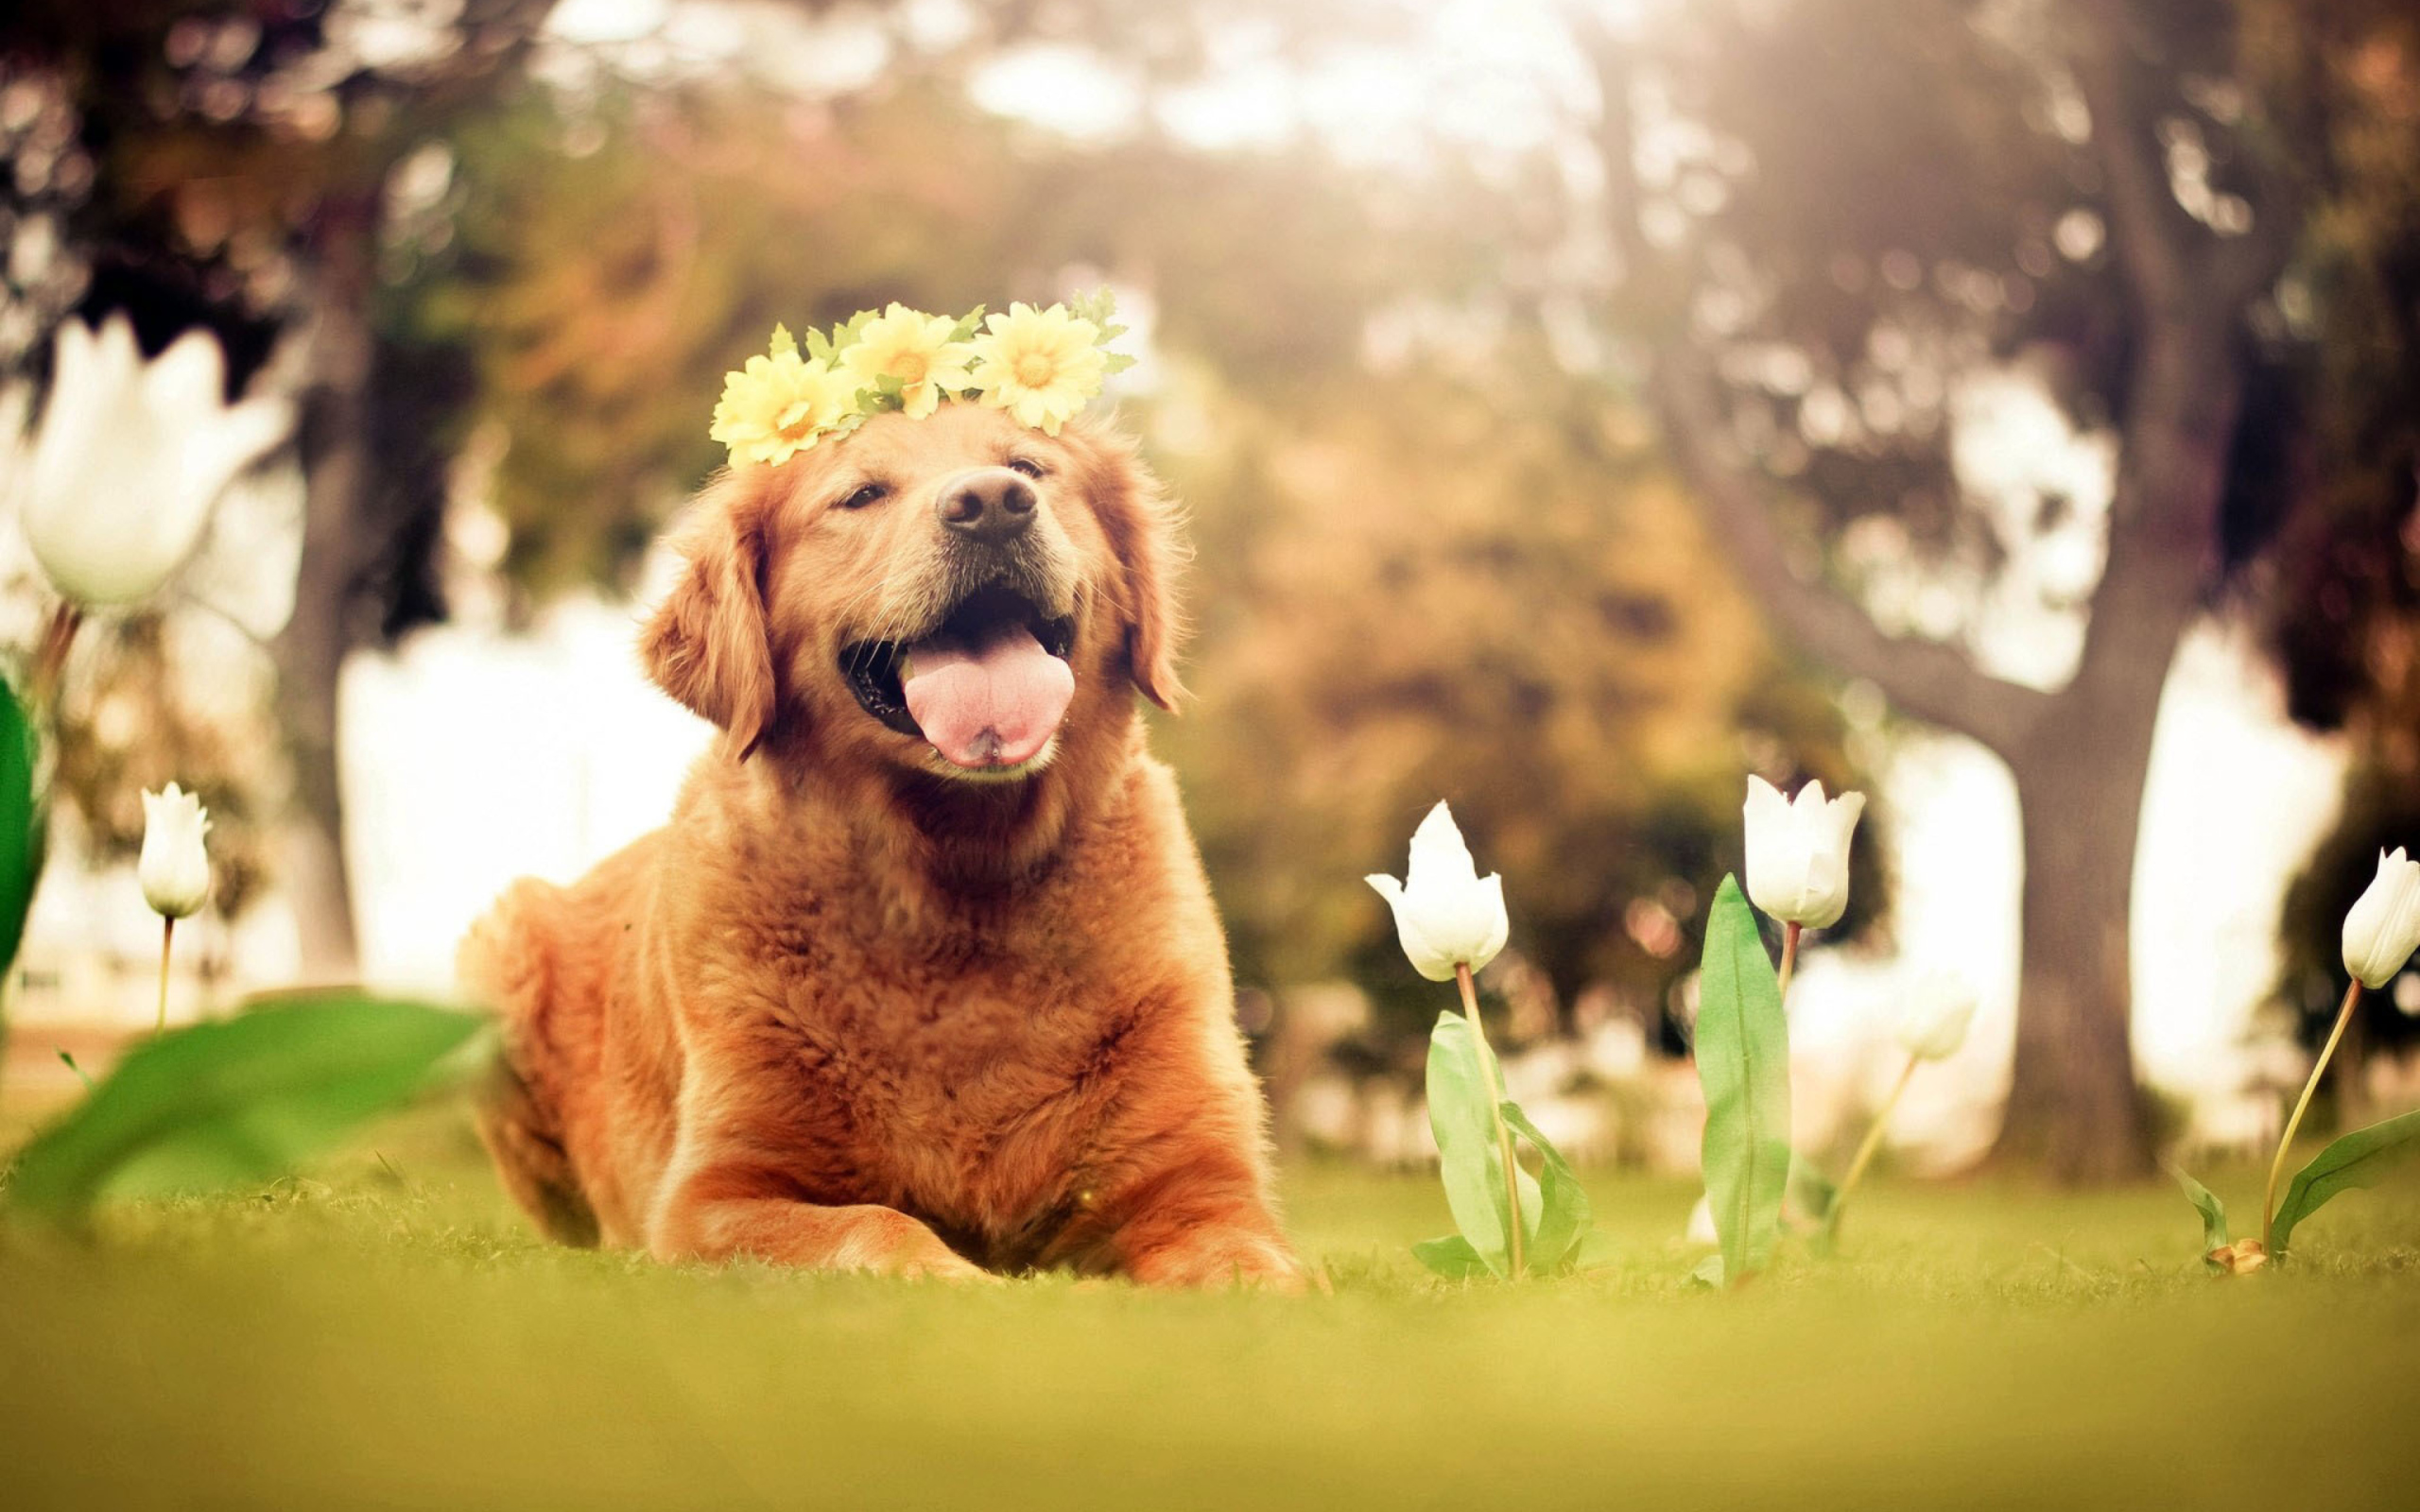 Обои Ginger Dog With Flower Wreath 2560x1600